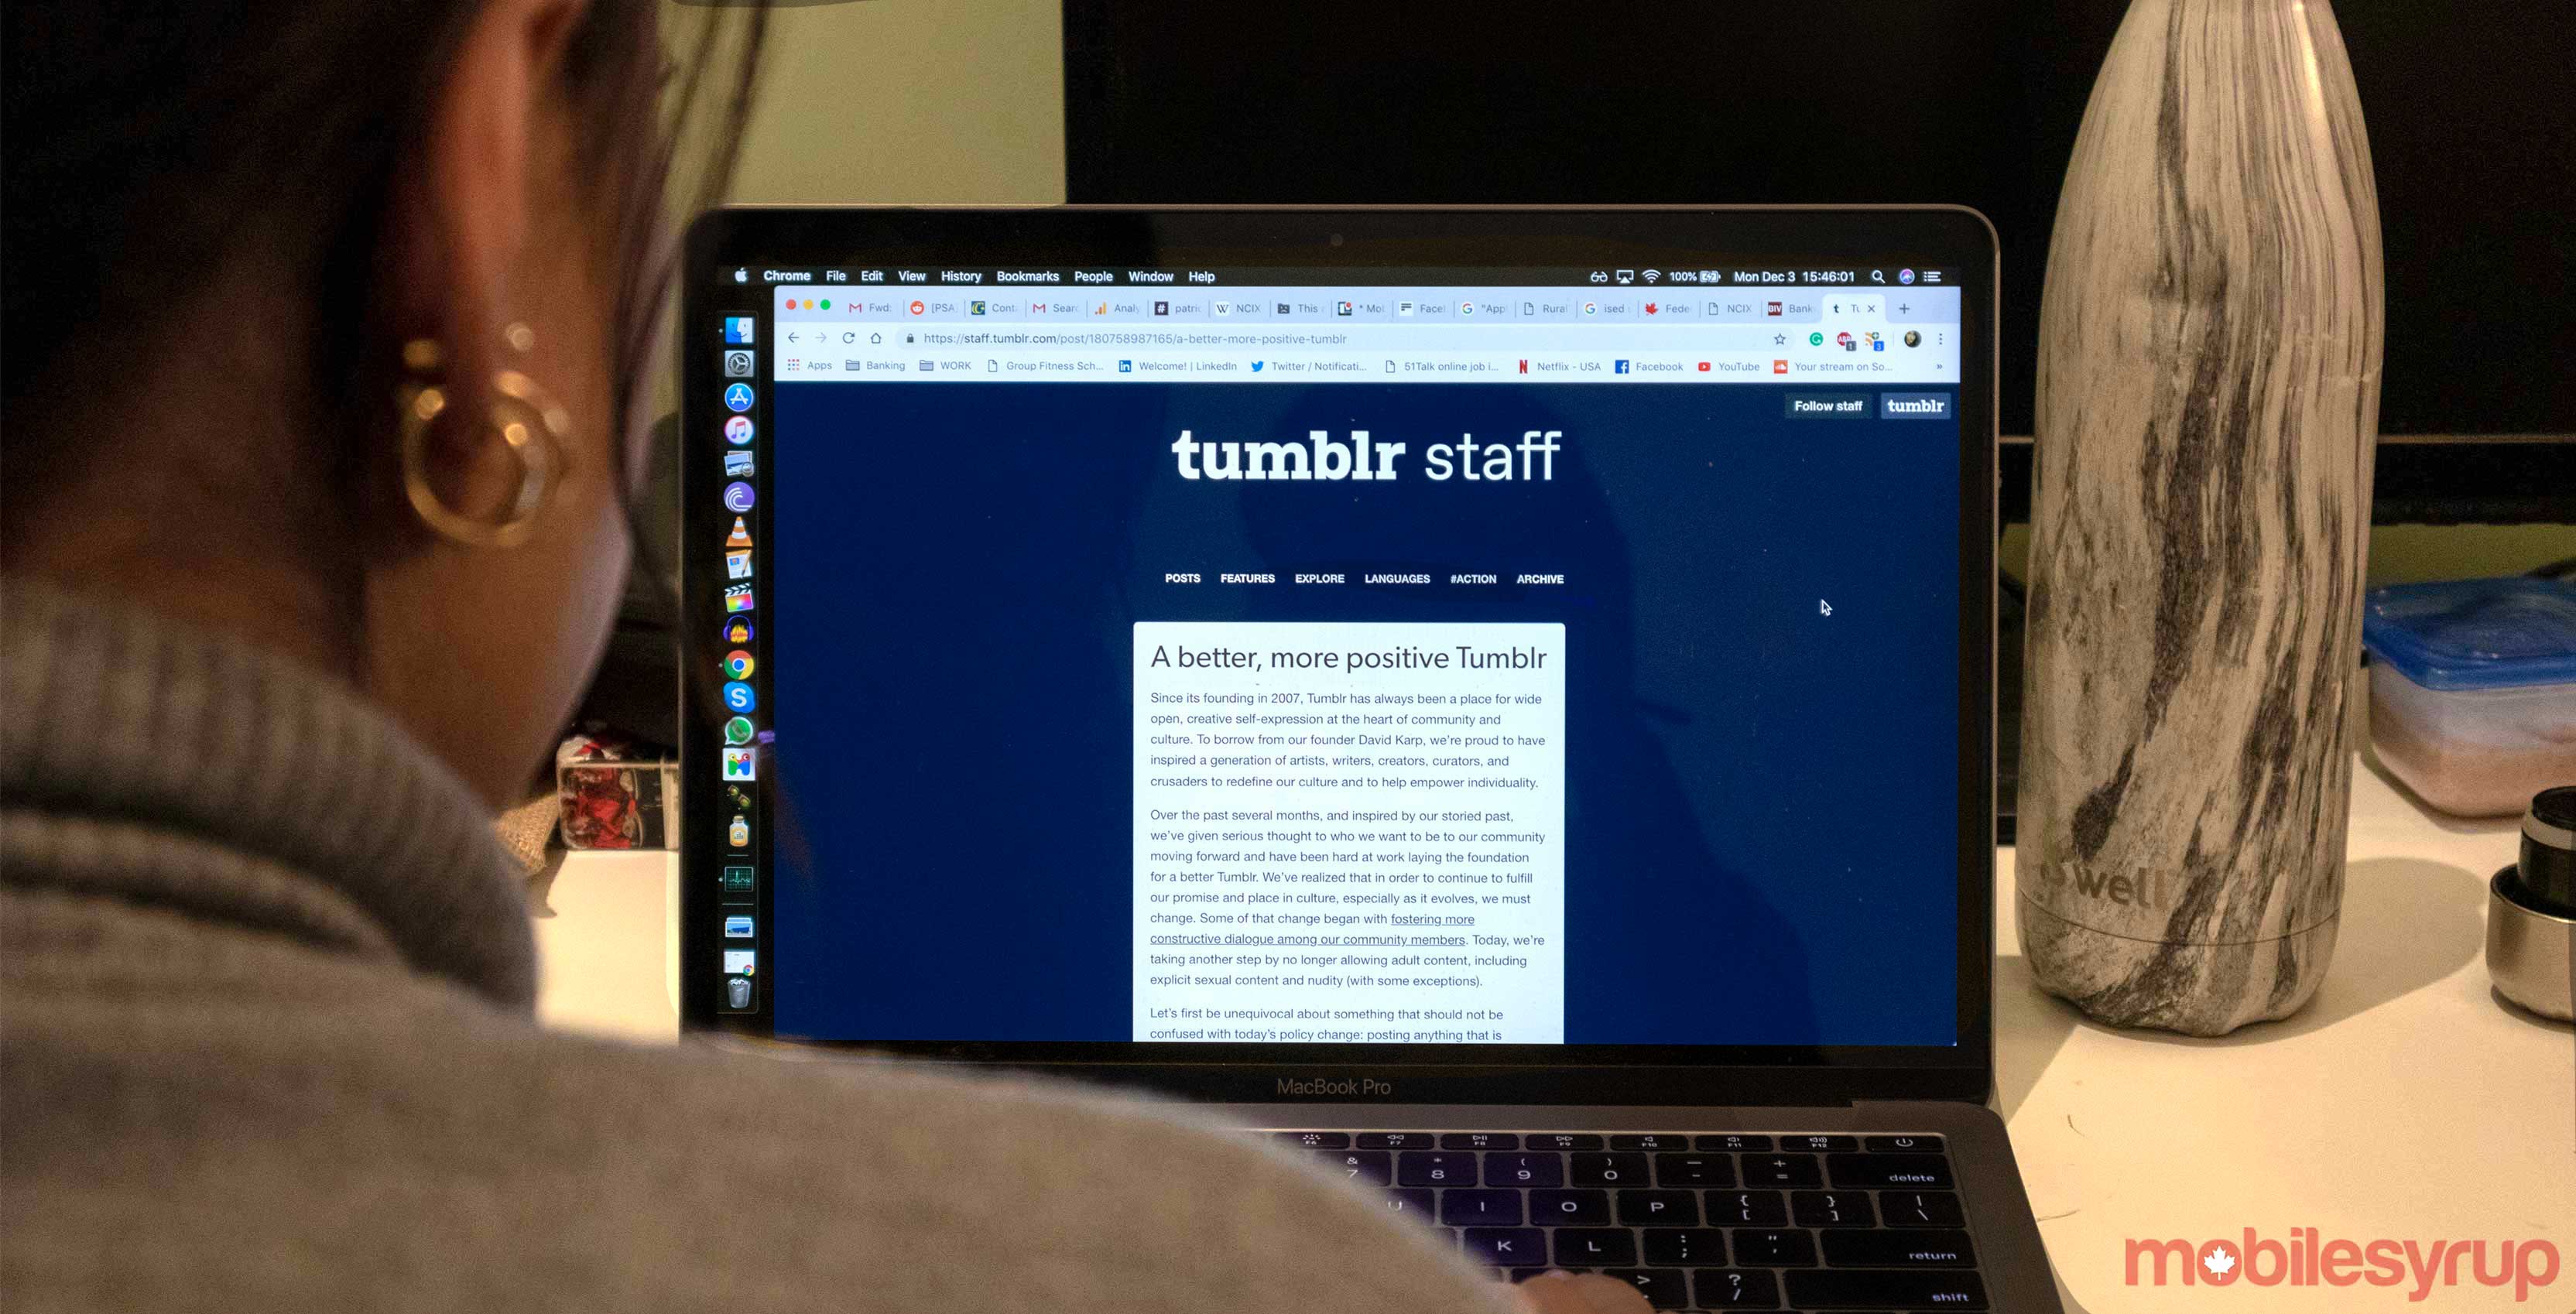 Tumblr to ban pornographic content